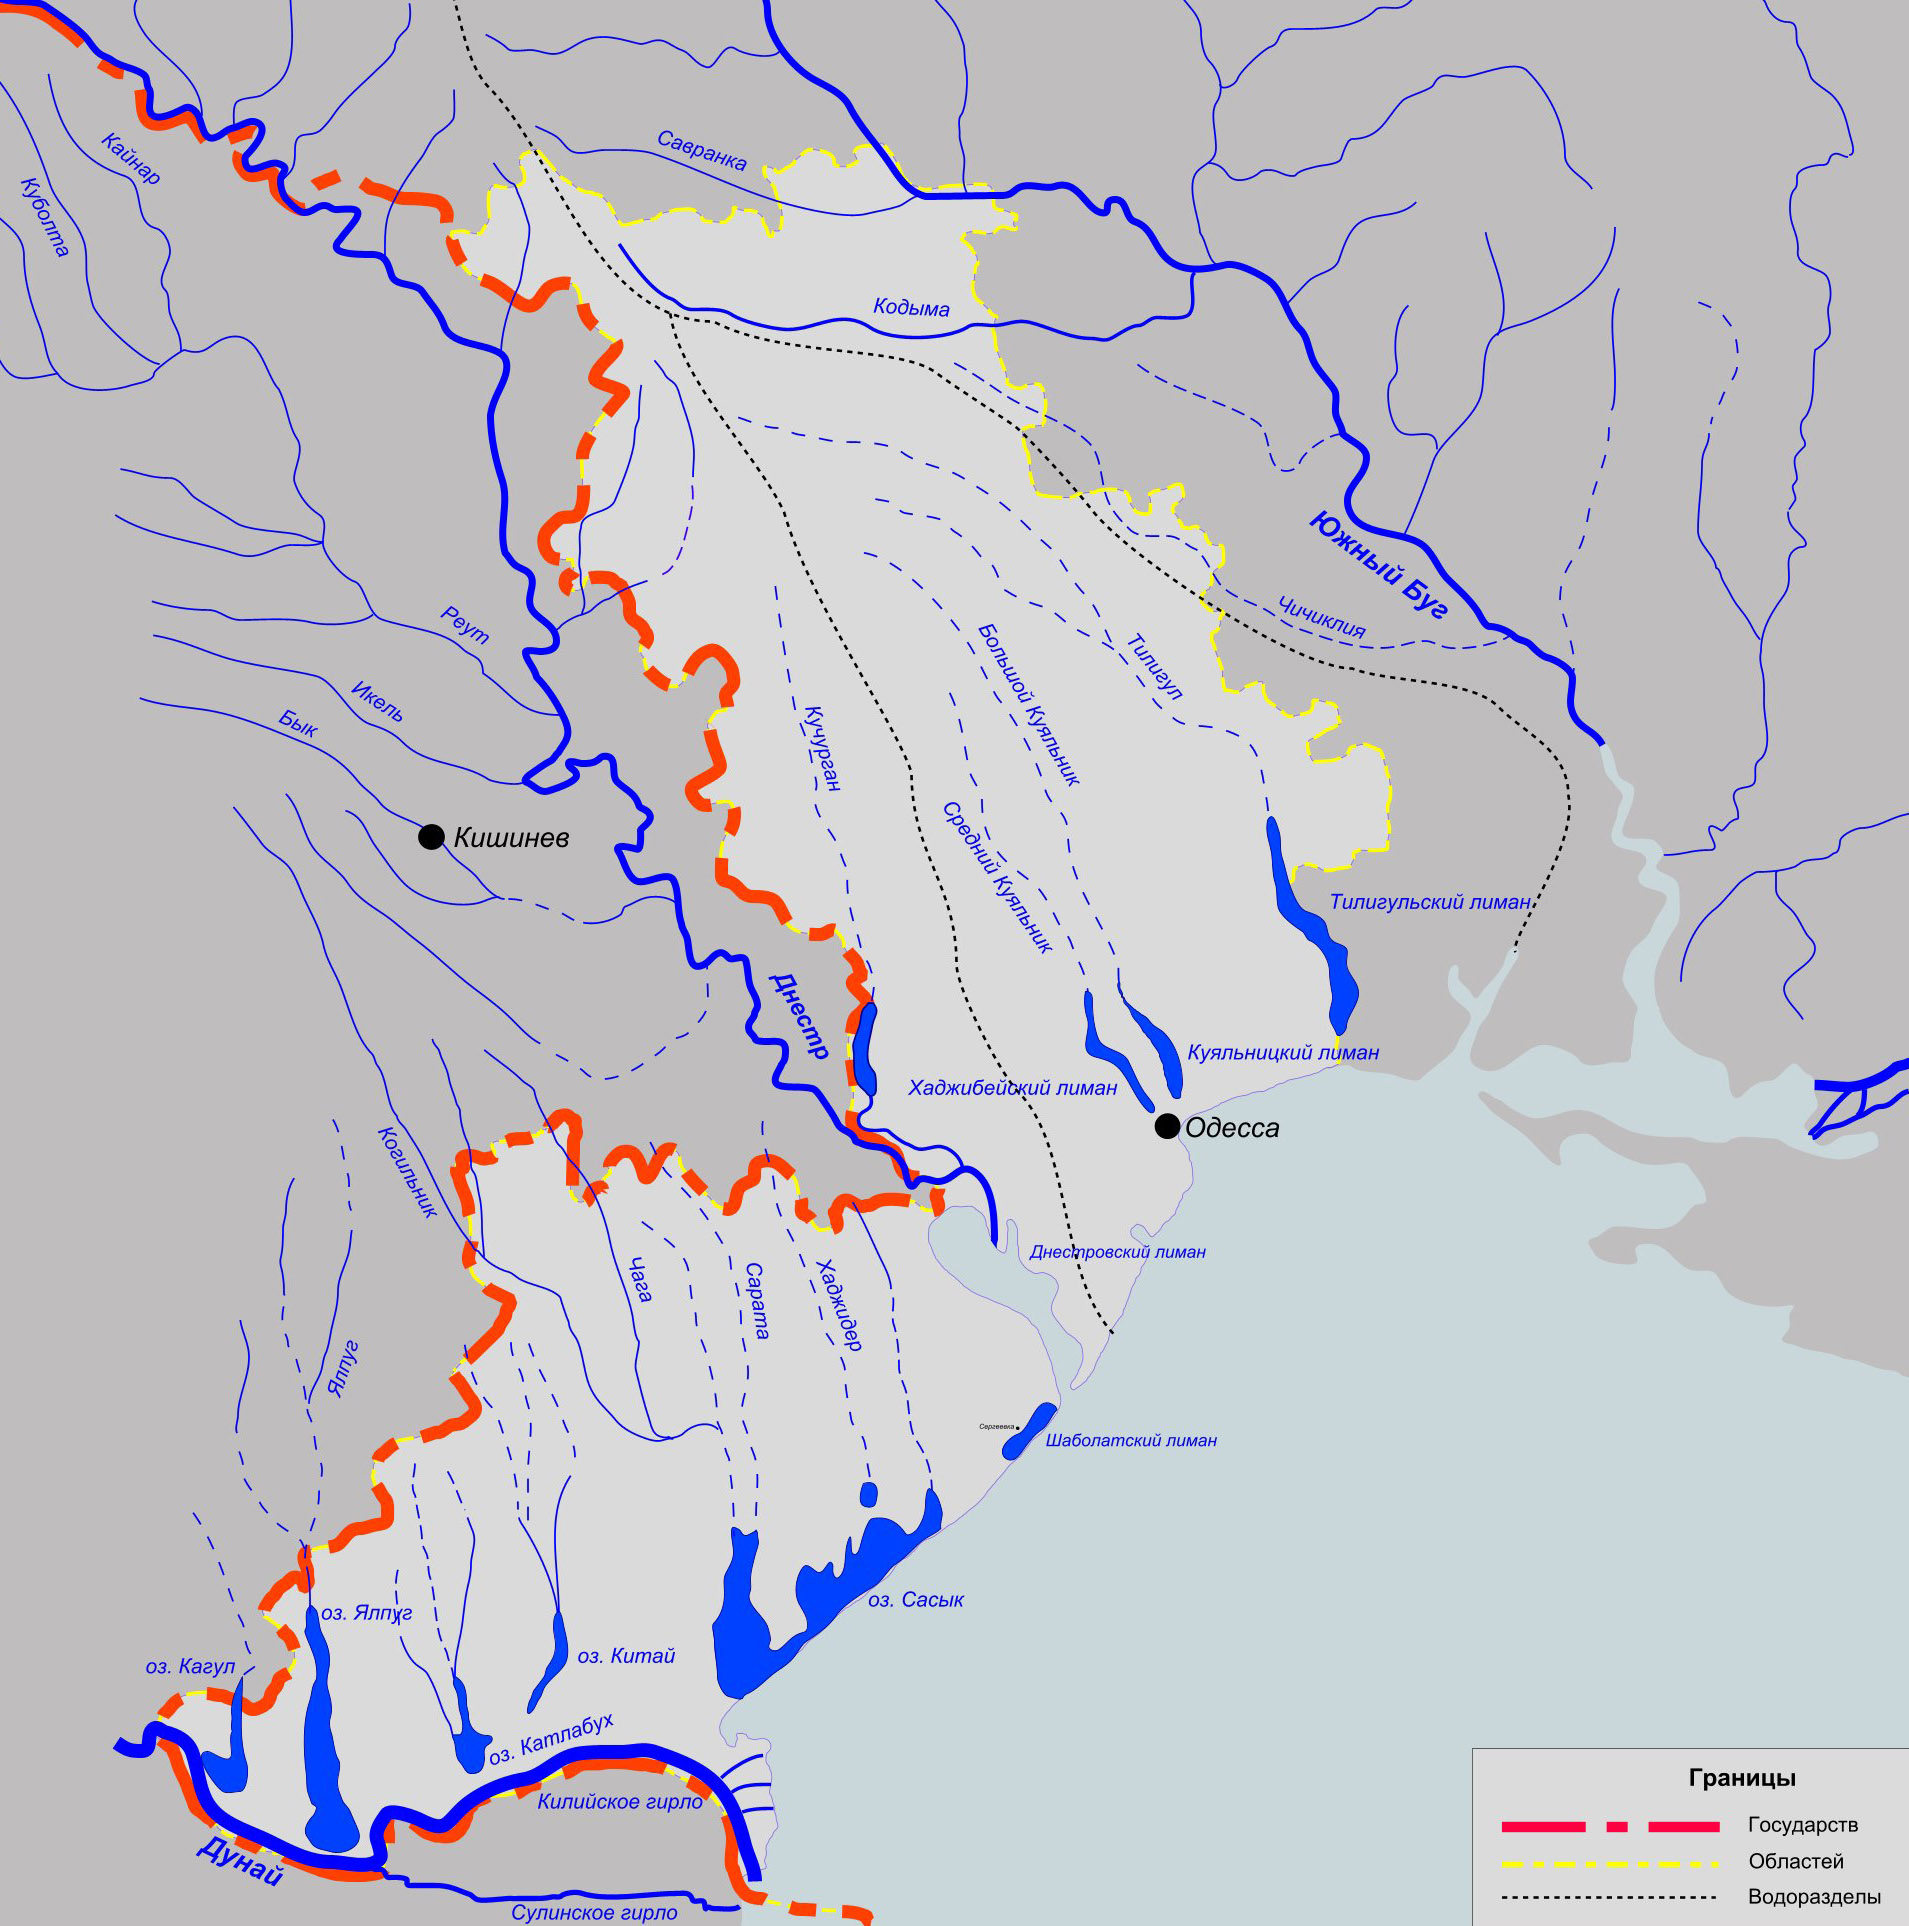 Râurile din regiunea Odesa - Wikipedia